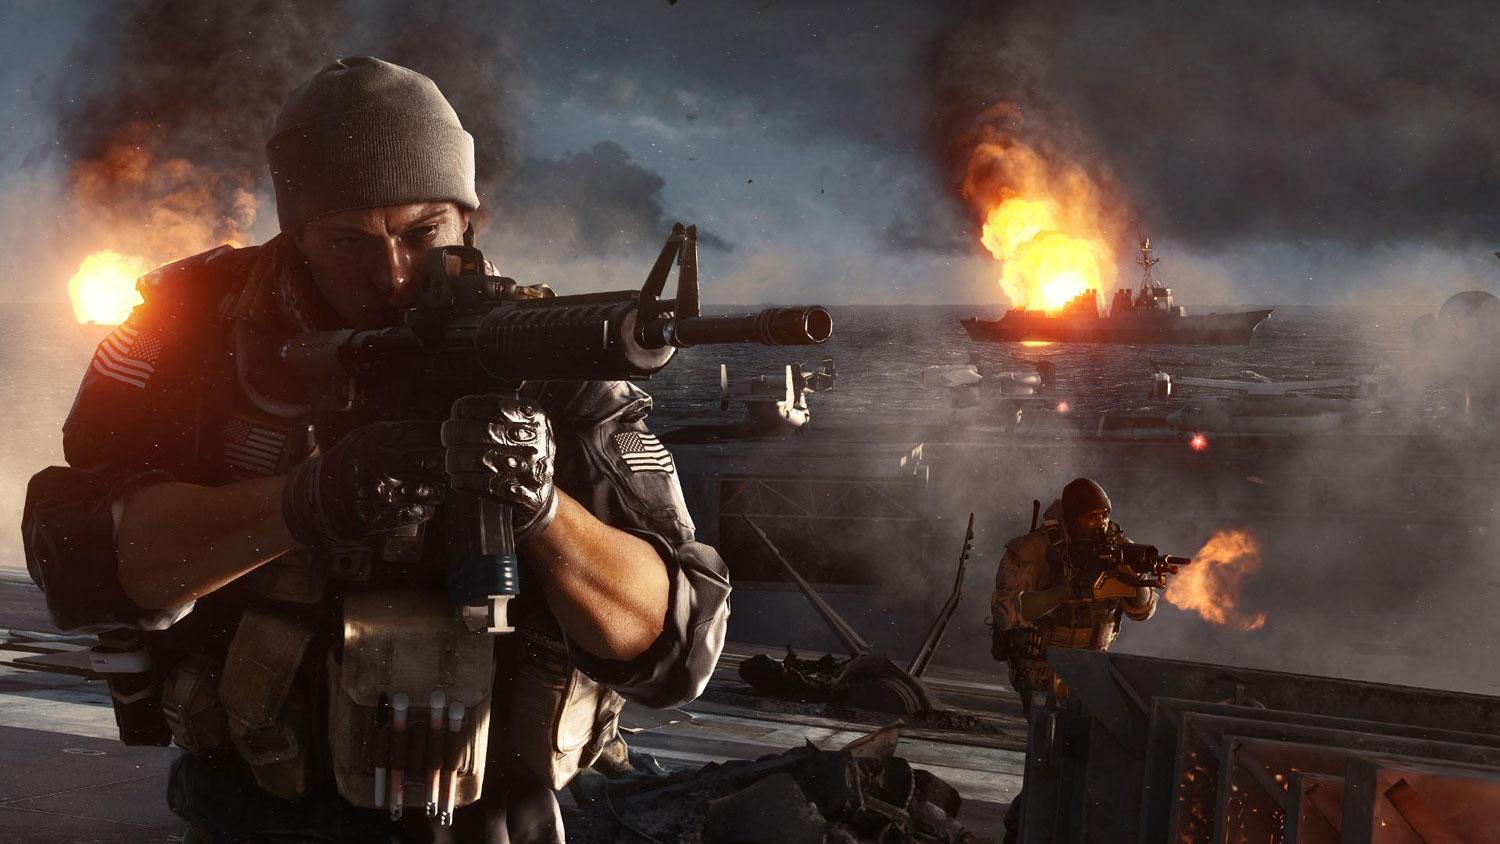 Battlefield 4: Official Battlelog Features Video 